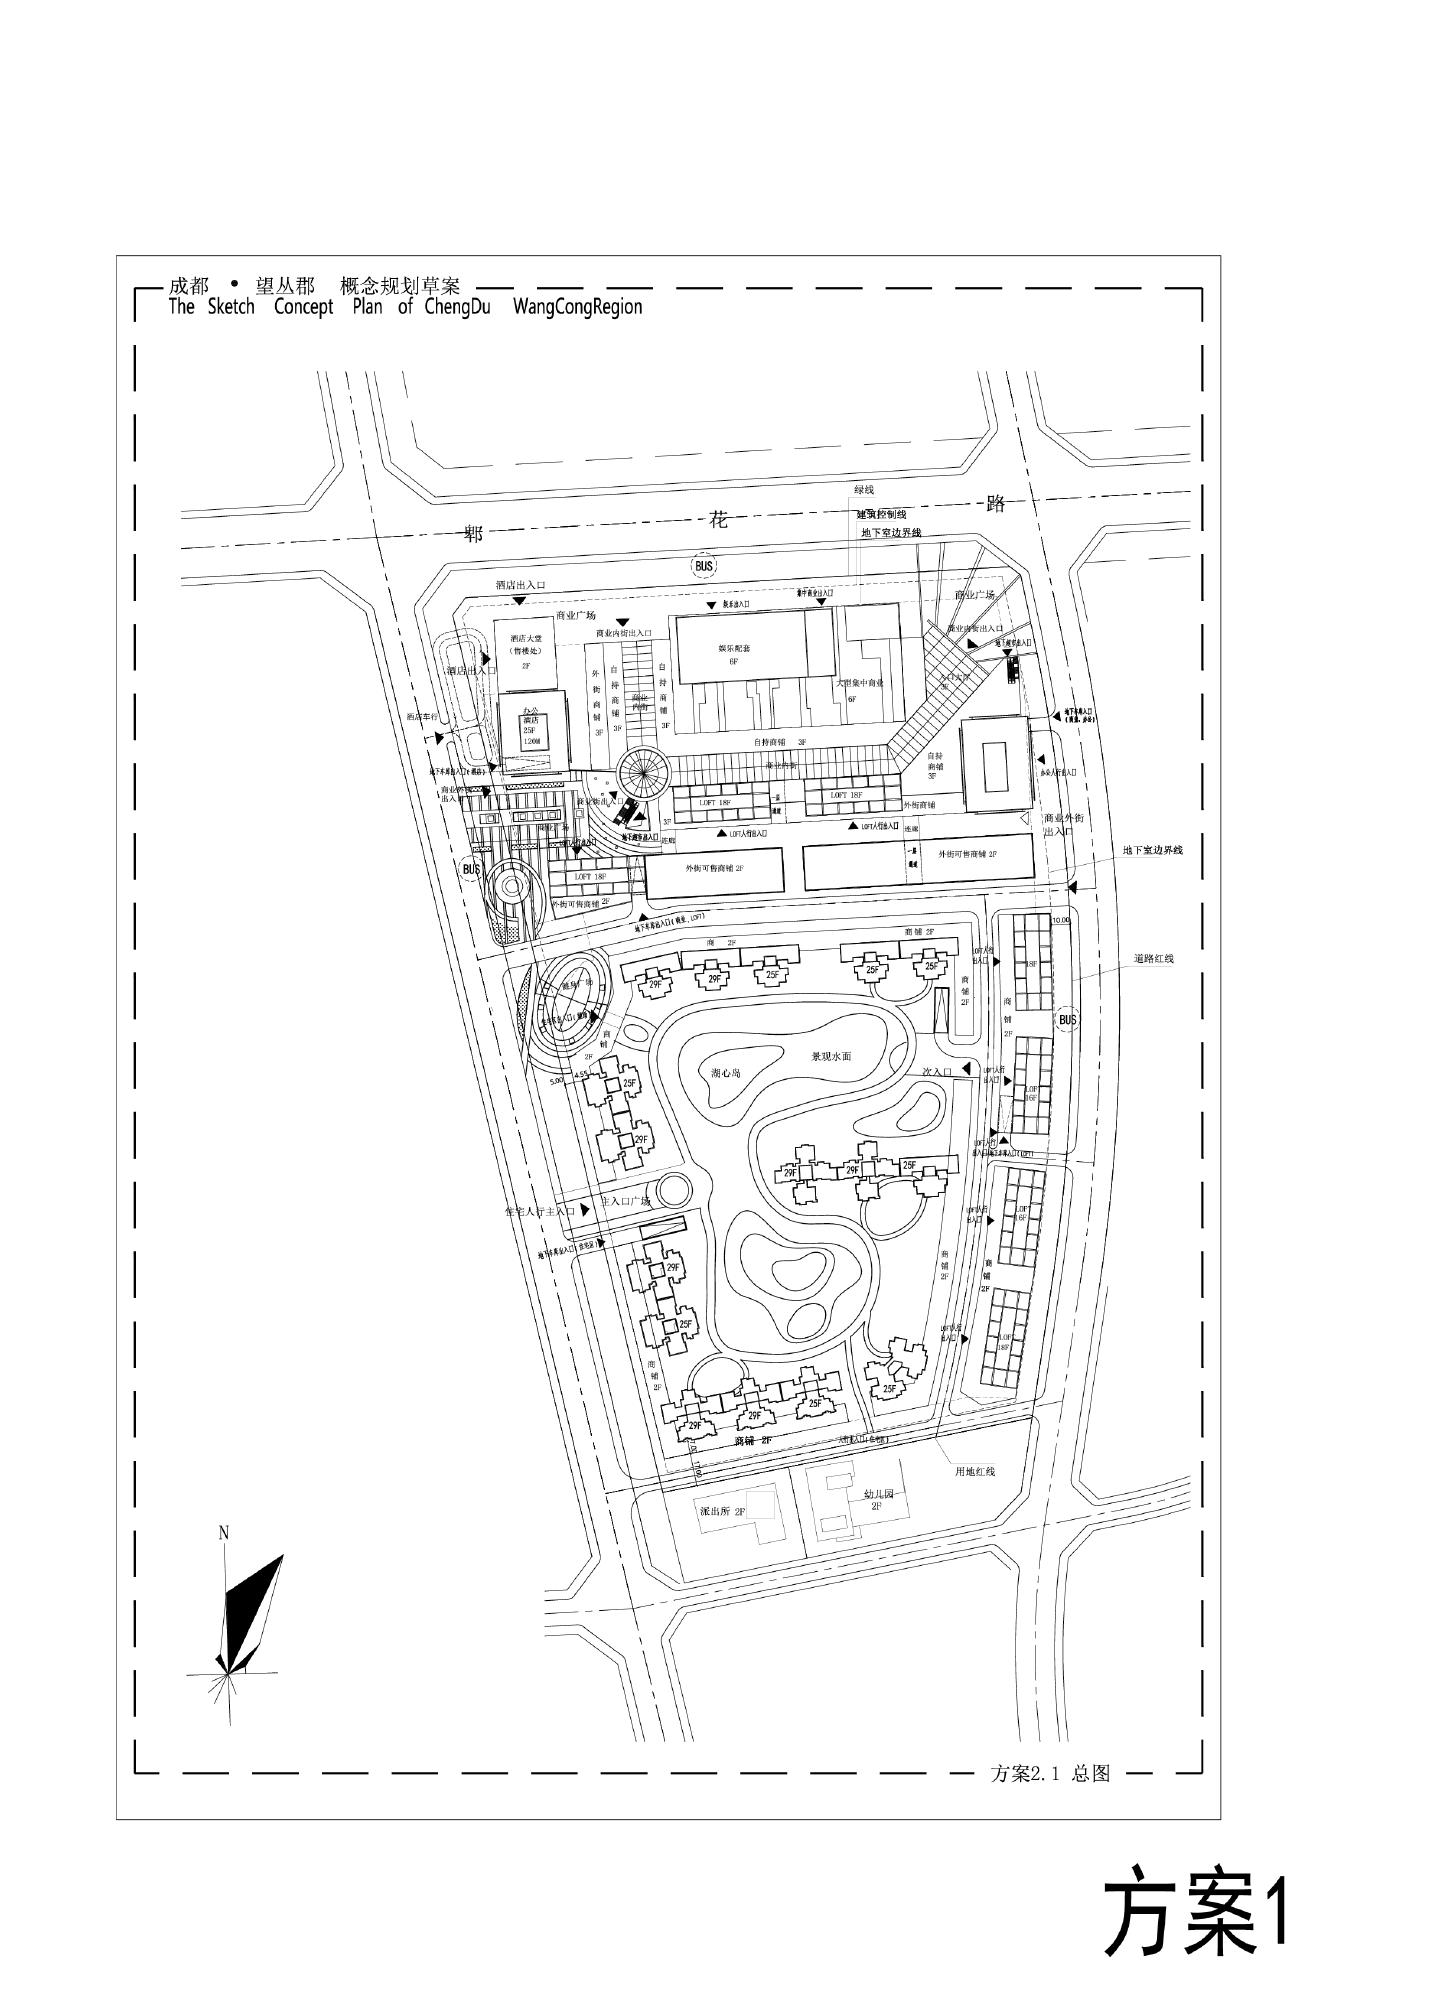 成都·望丛郡概念规划草案1008 花样年方案CAD图.dwg